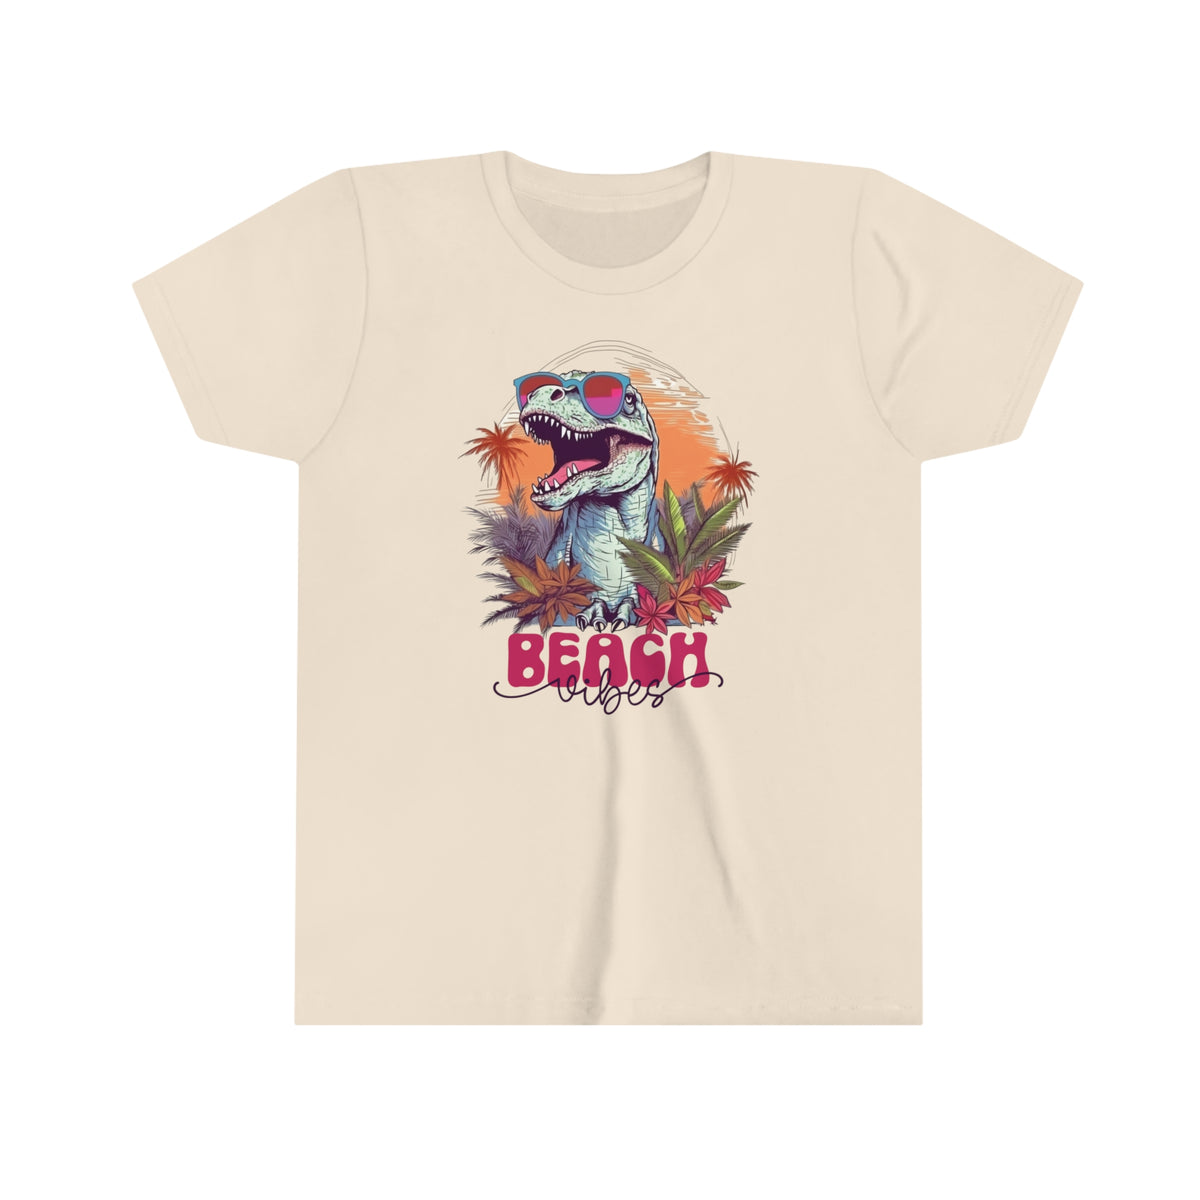 Beach Vibes T Rex Shirt | Funny Dinosaur Shirt | Beach Bum Shirt | Tropical Summer Shirt | Youth Jersey T-shirt